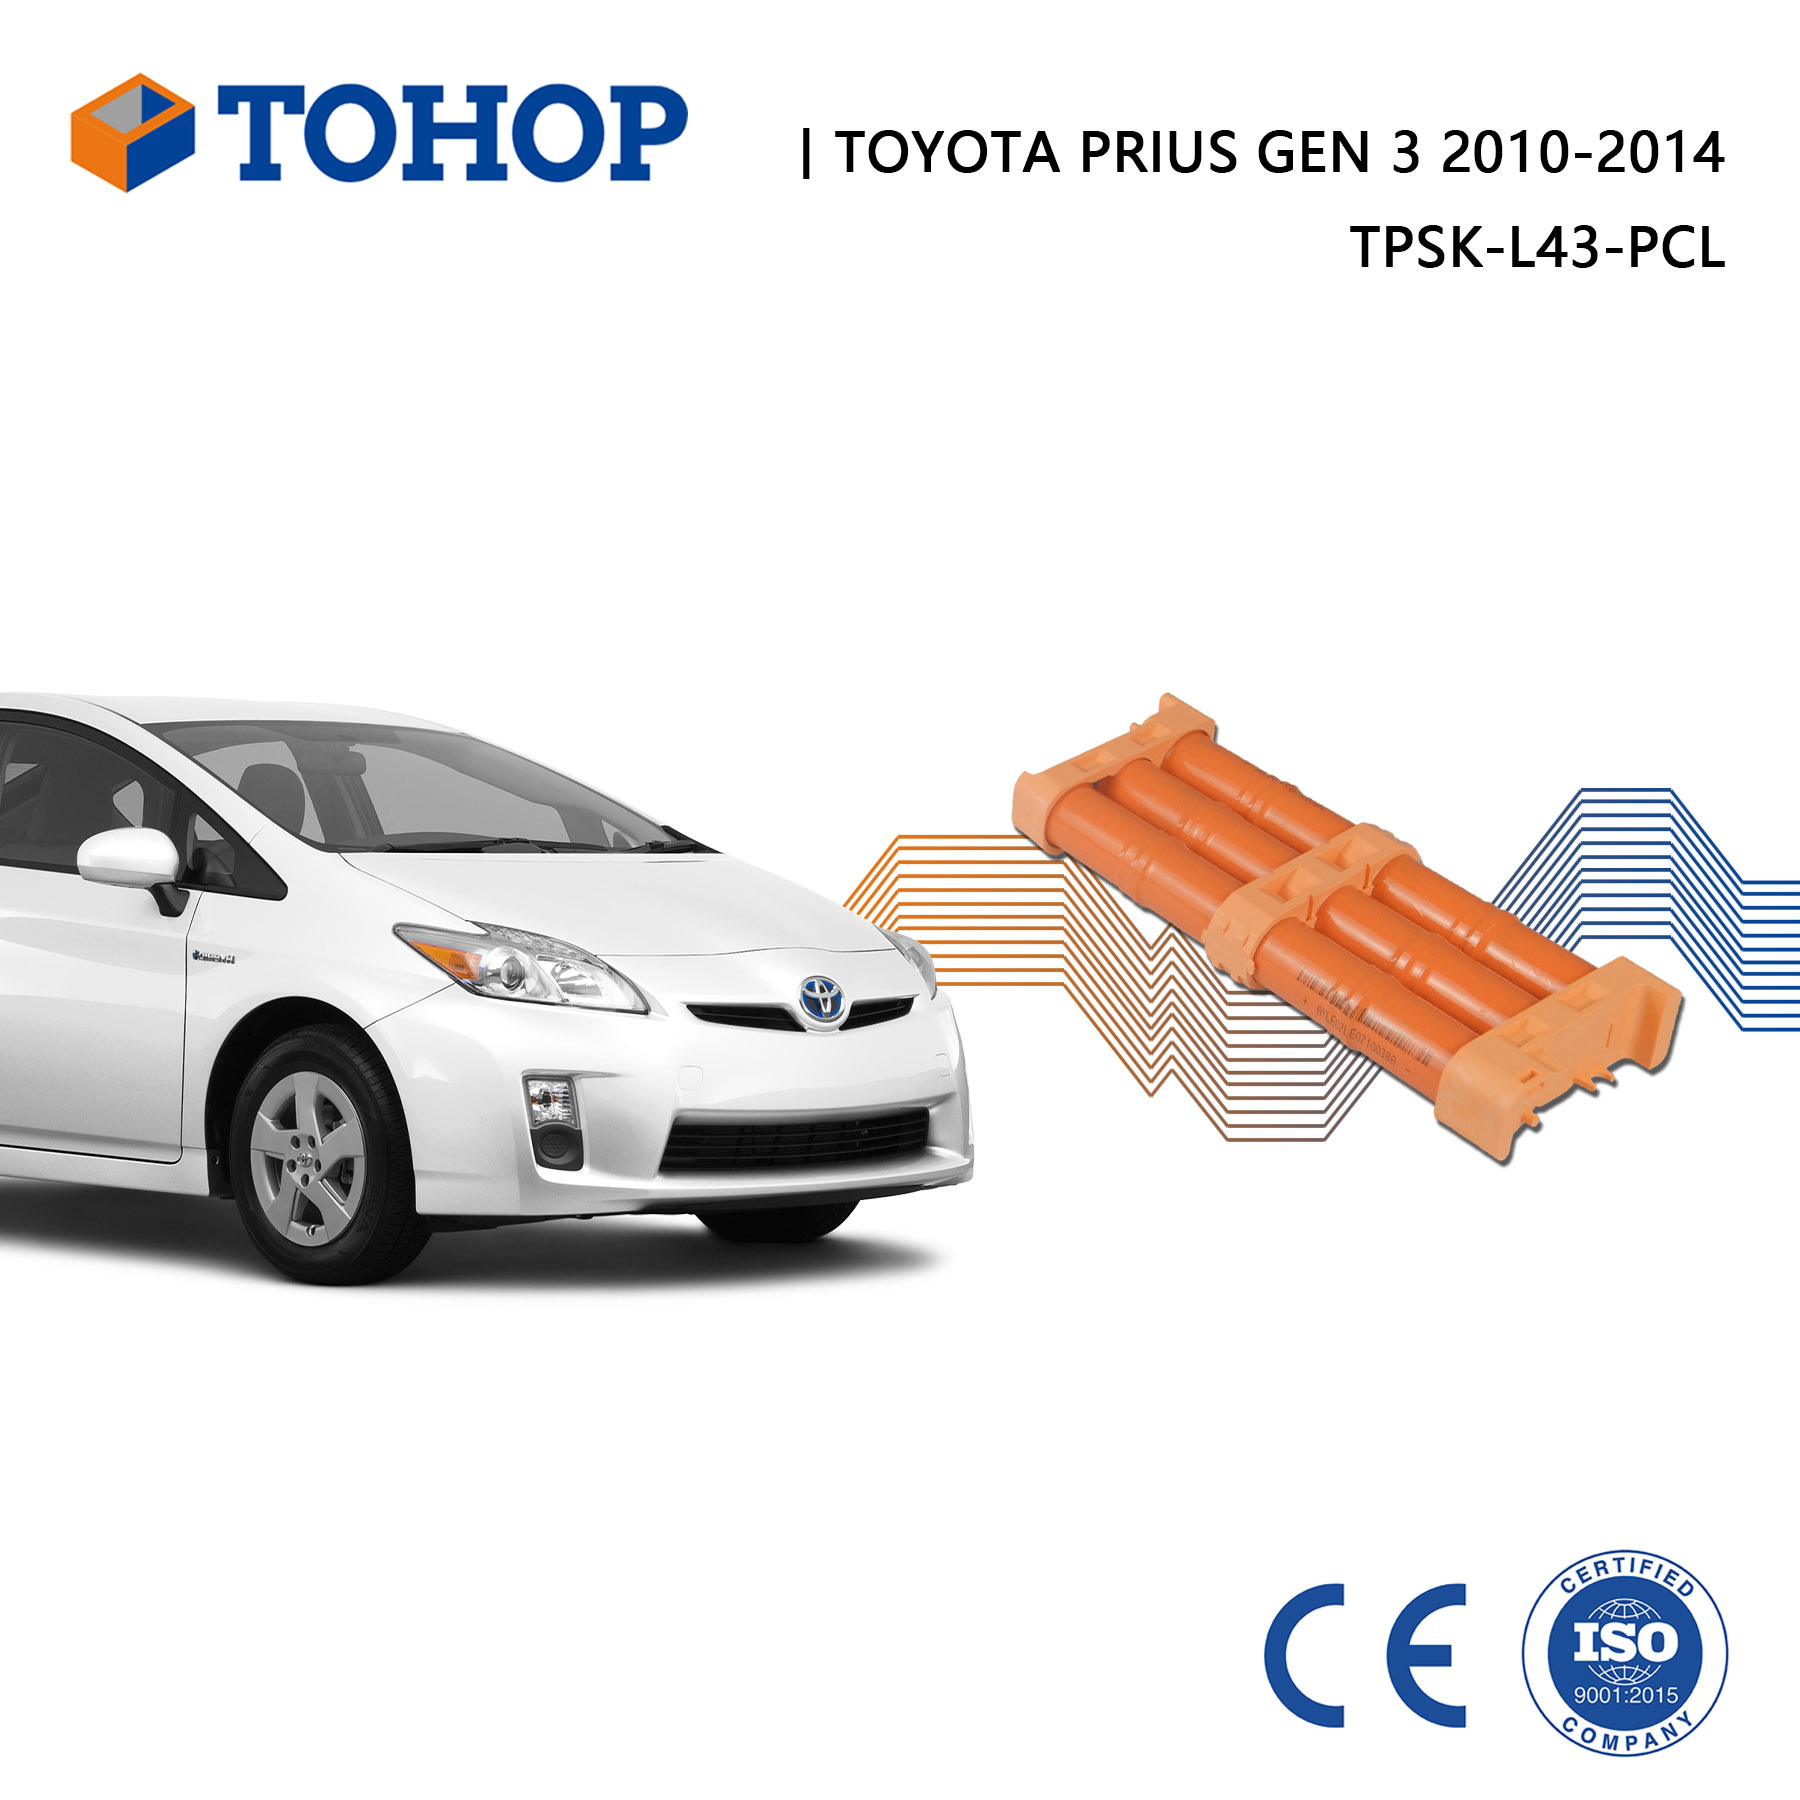 Toyota Prius Gen 3 Hybridbatterie